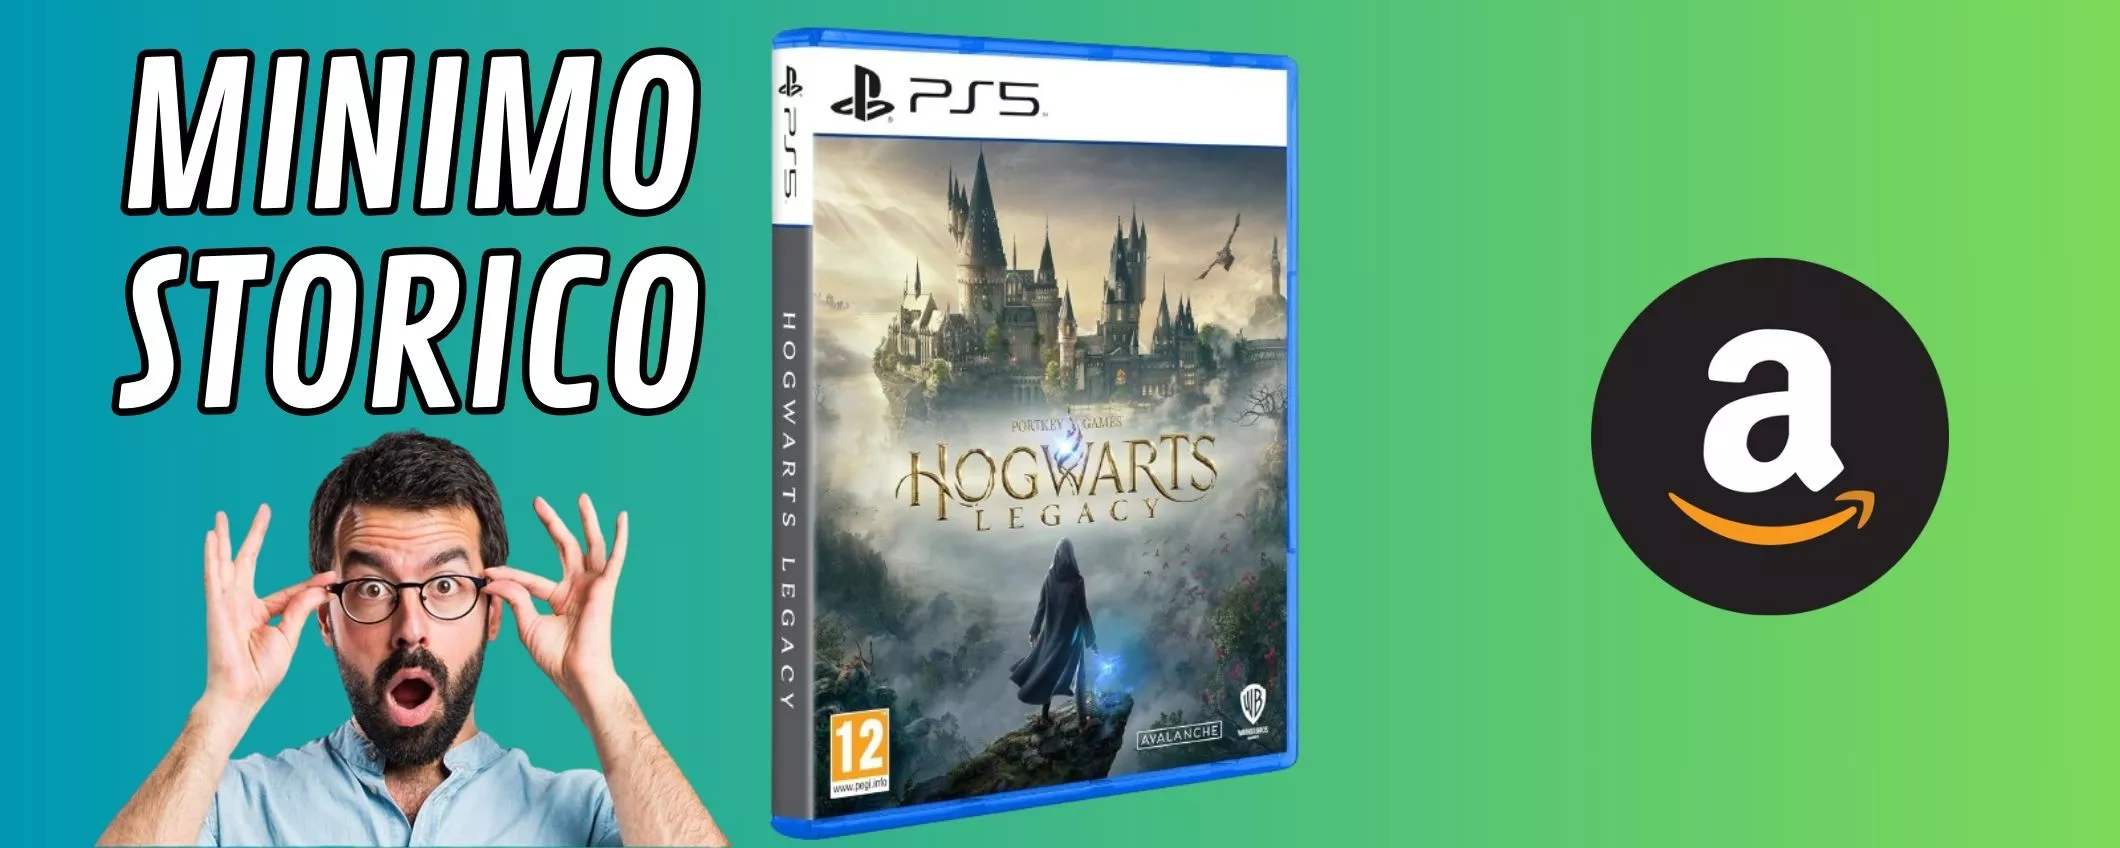 Amazon fa la magia: Hogwarts Legacy al MINIMO STORICO!